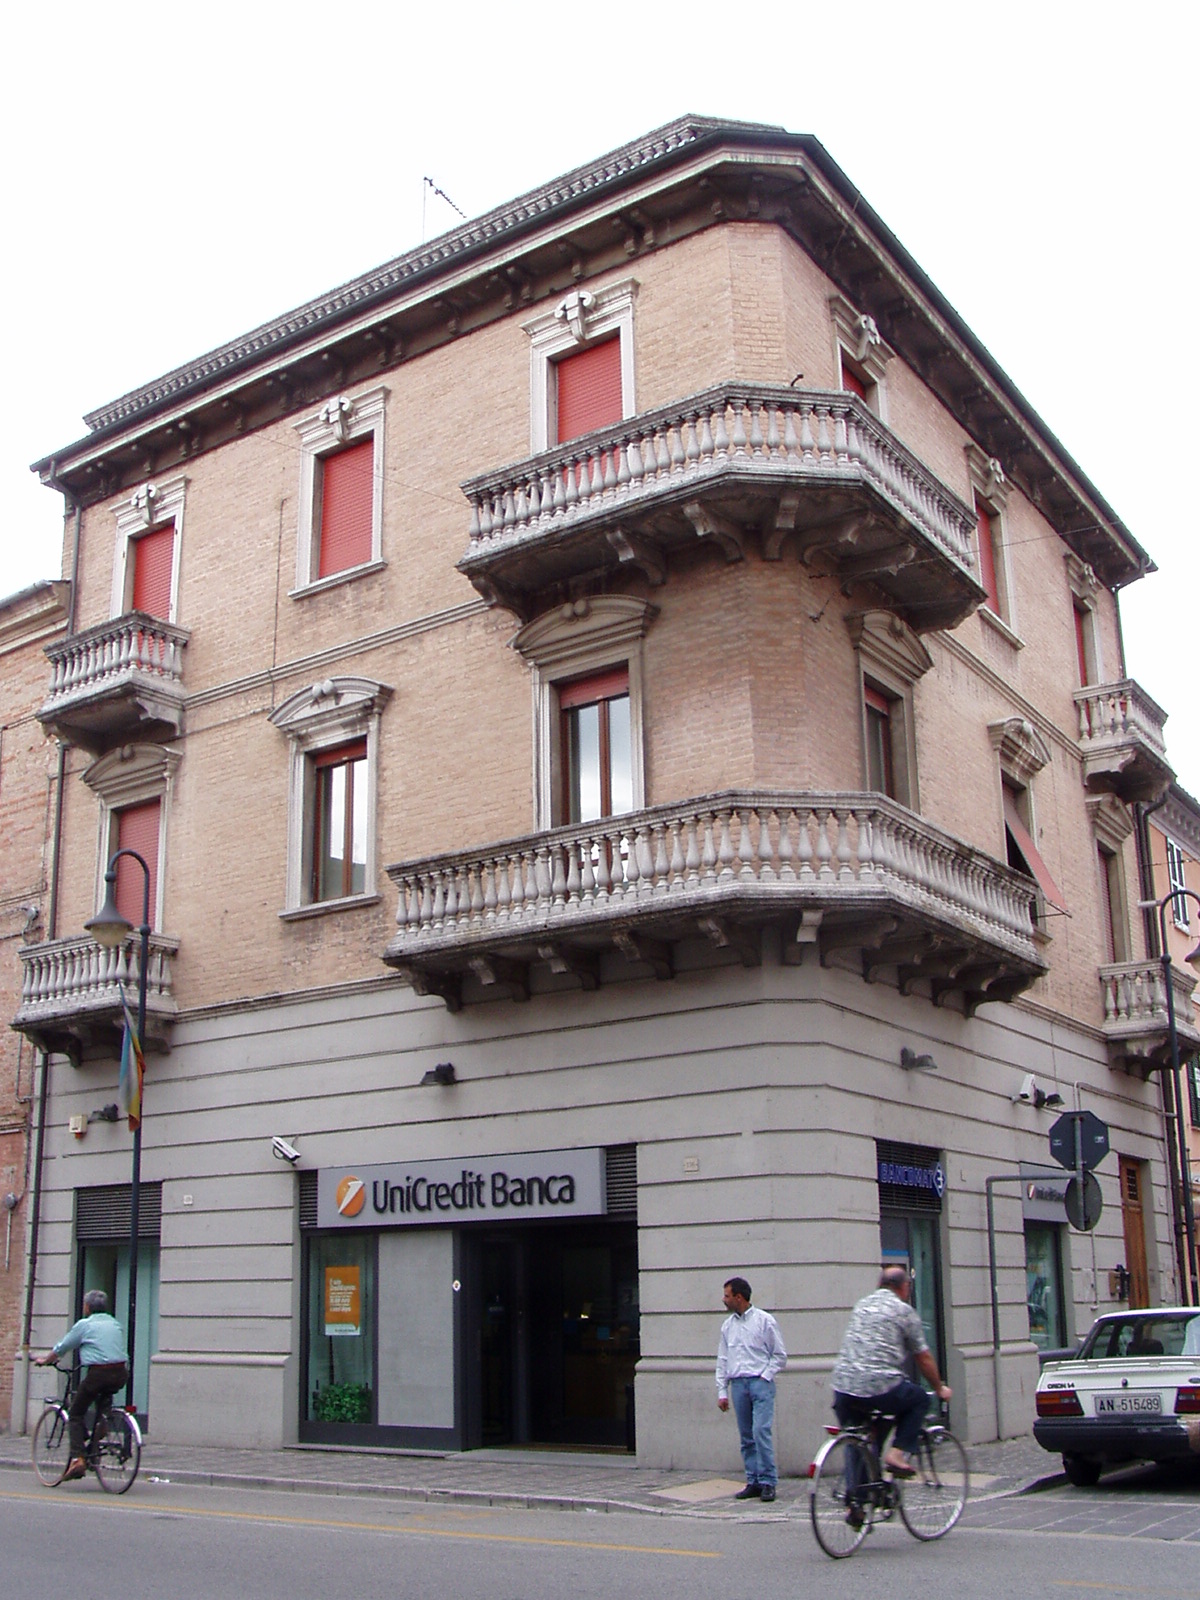 Palazzo d'abitazioni (palazzo, di appartamenti) - Chiaravalle (AN) 